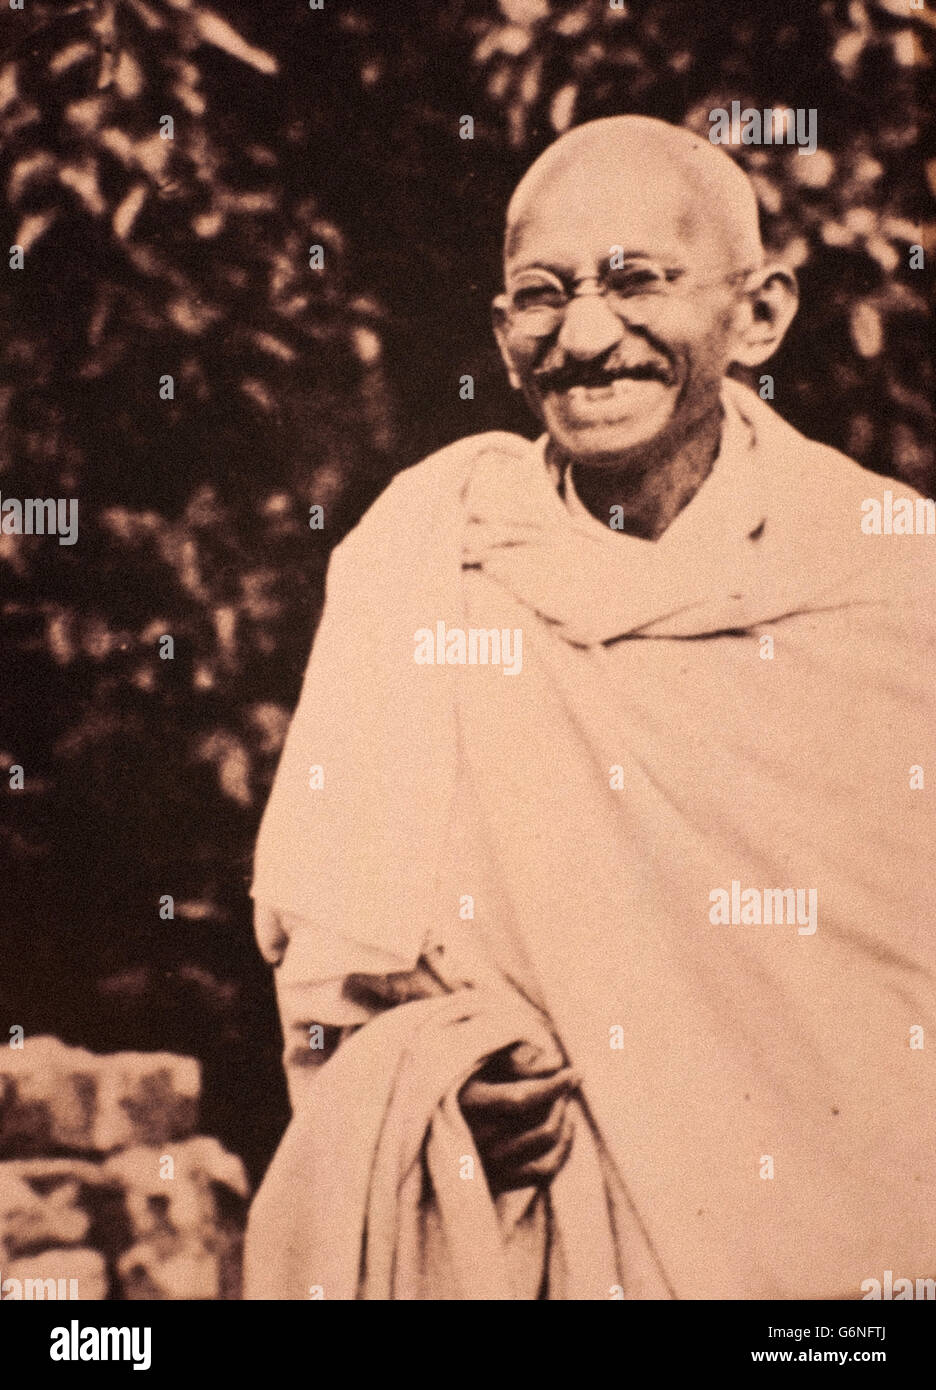 Mohandas Karamchand Gandhi -said the Mahatma (Porbandar, October 2, 1869 - New Delhi, January 30, 1948) - Stock Photo